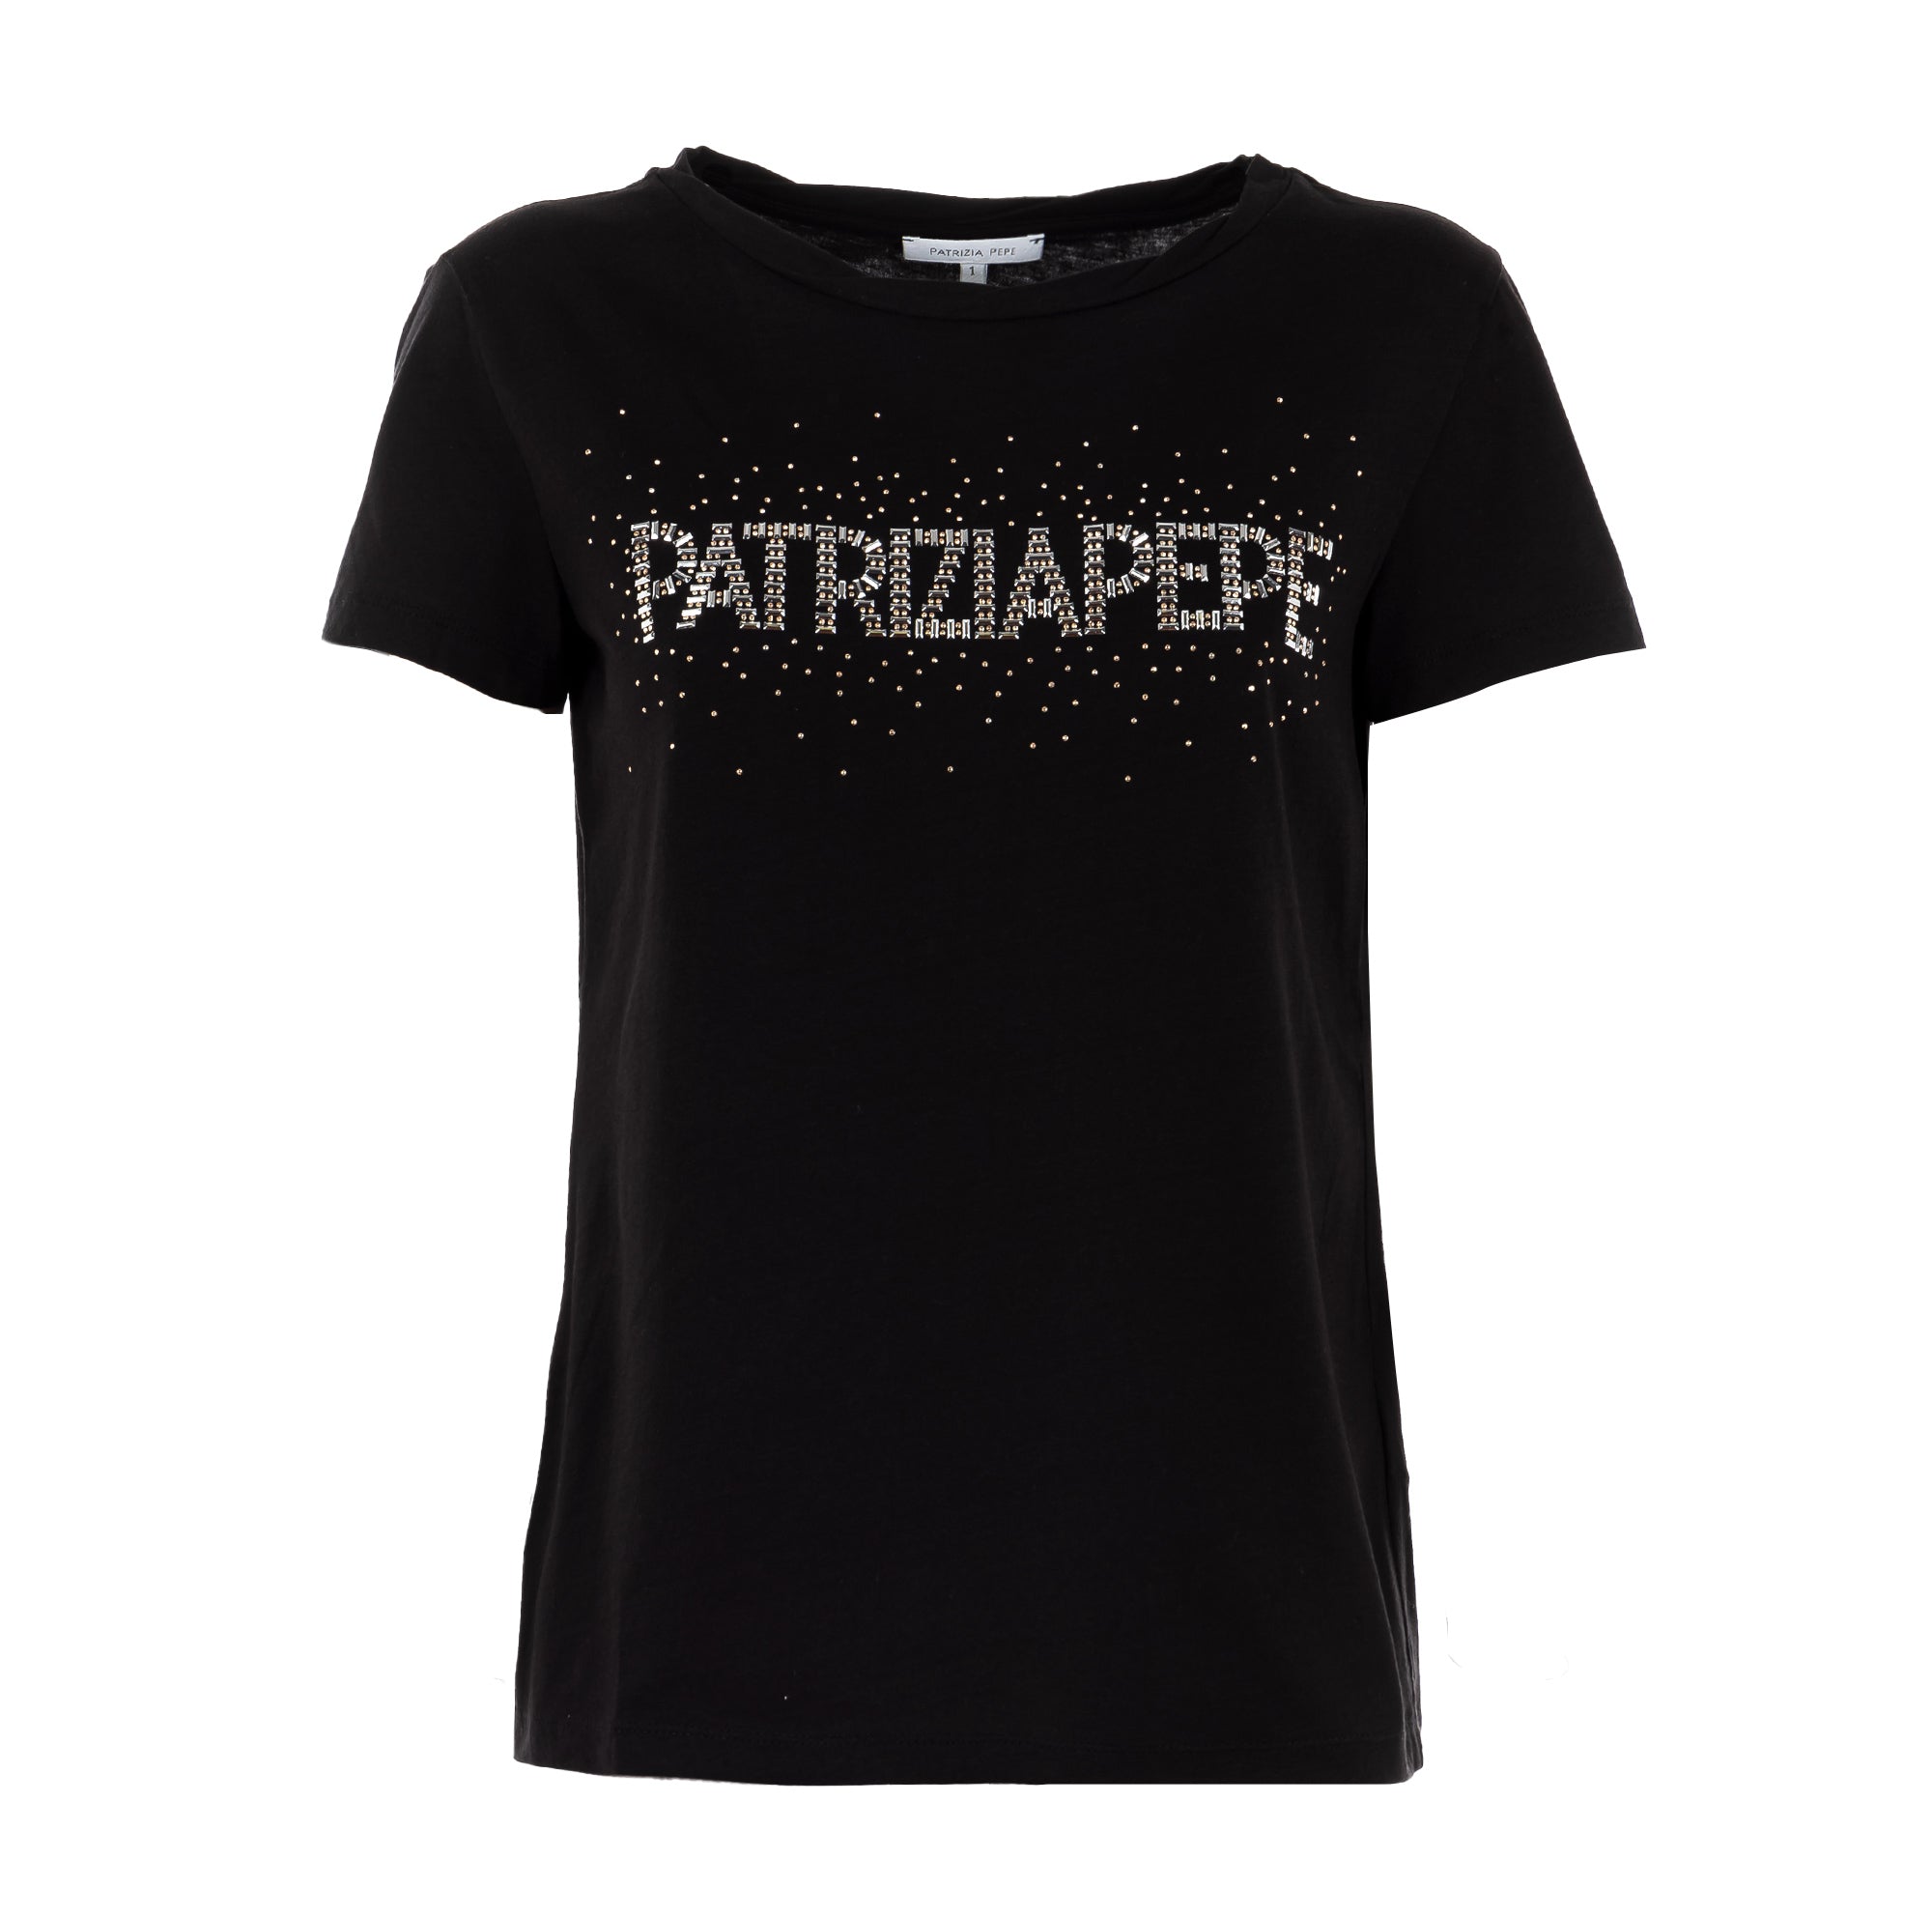 patrizia pepe | t-shirt da donna